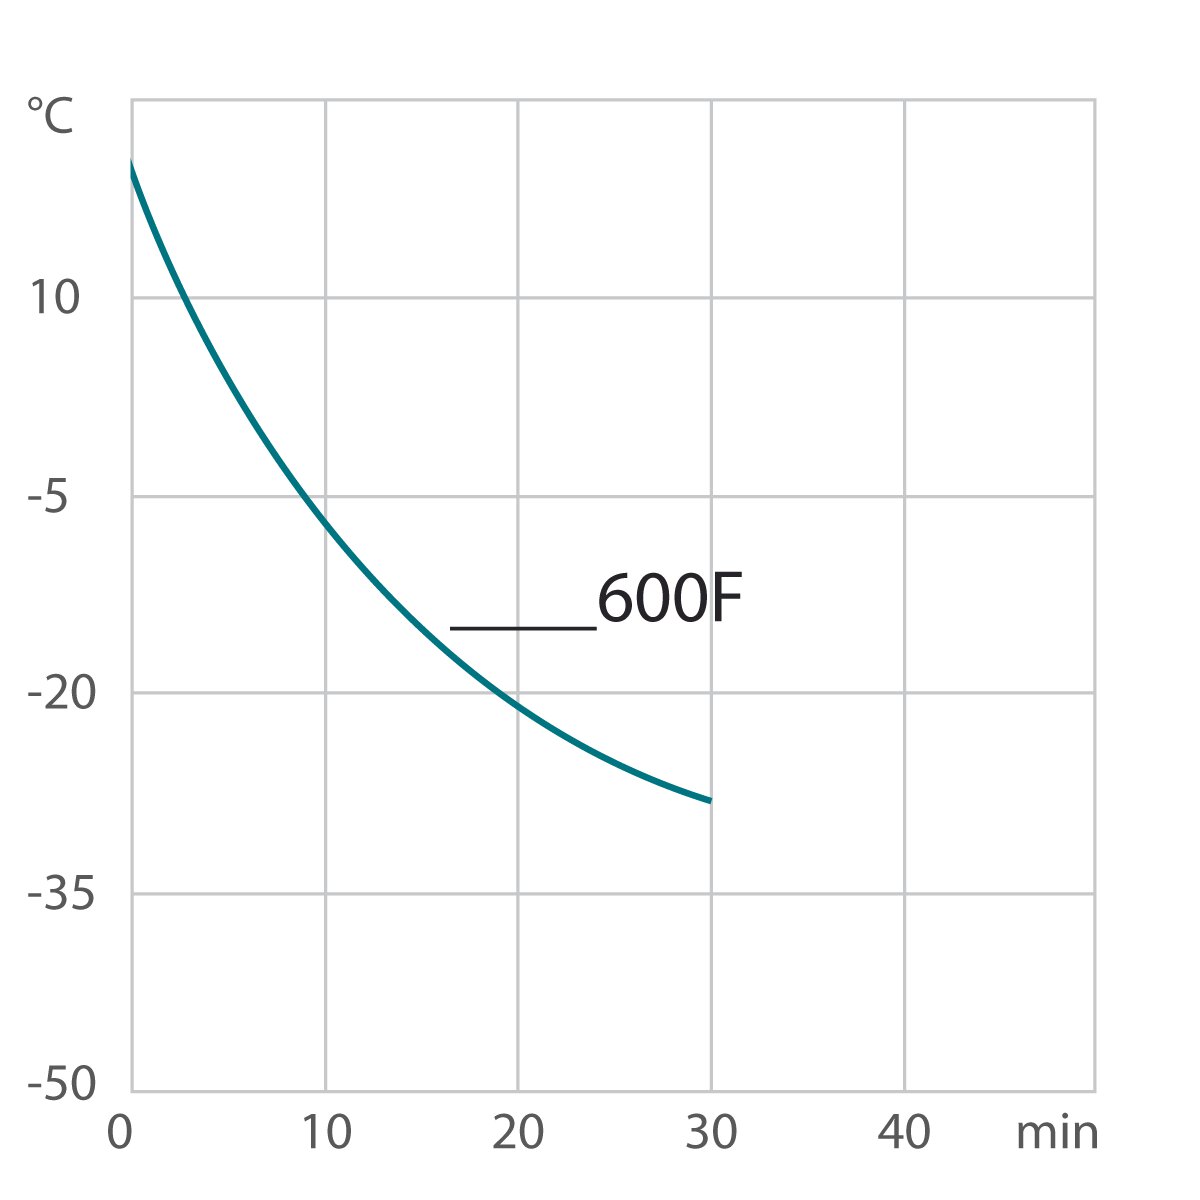 Curva de enfriamiento criotstato de circulación / termostato de laboratorio 600F